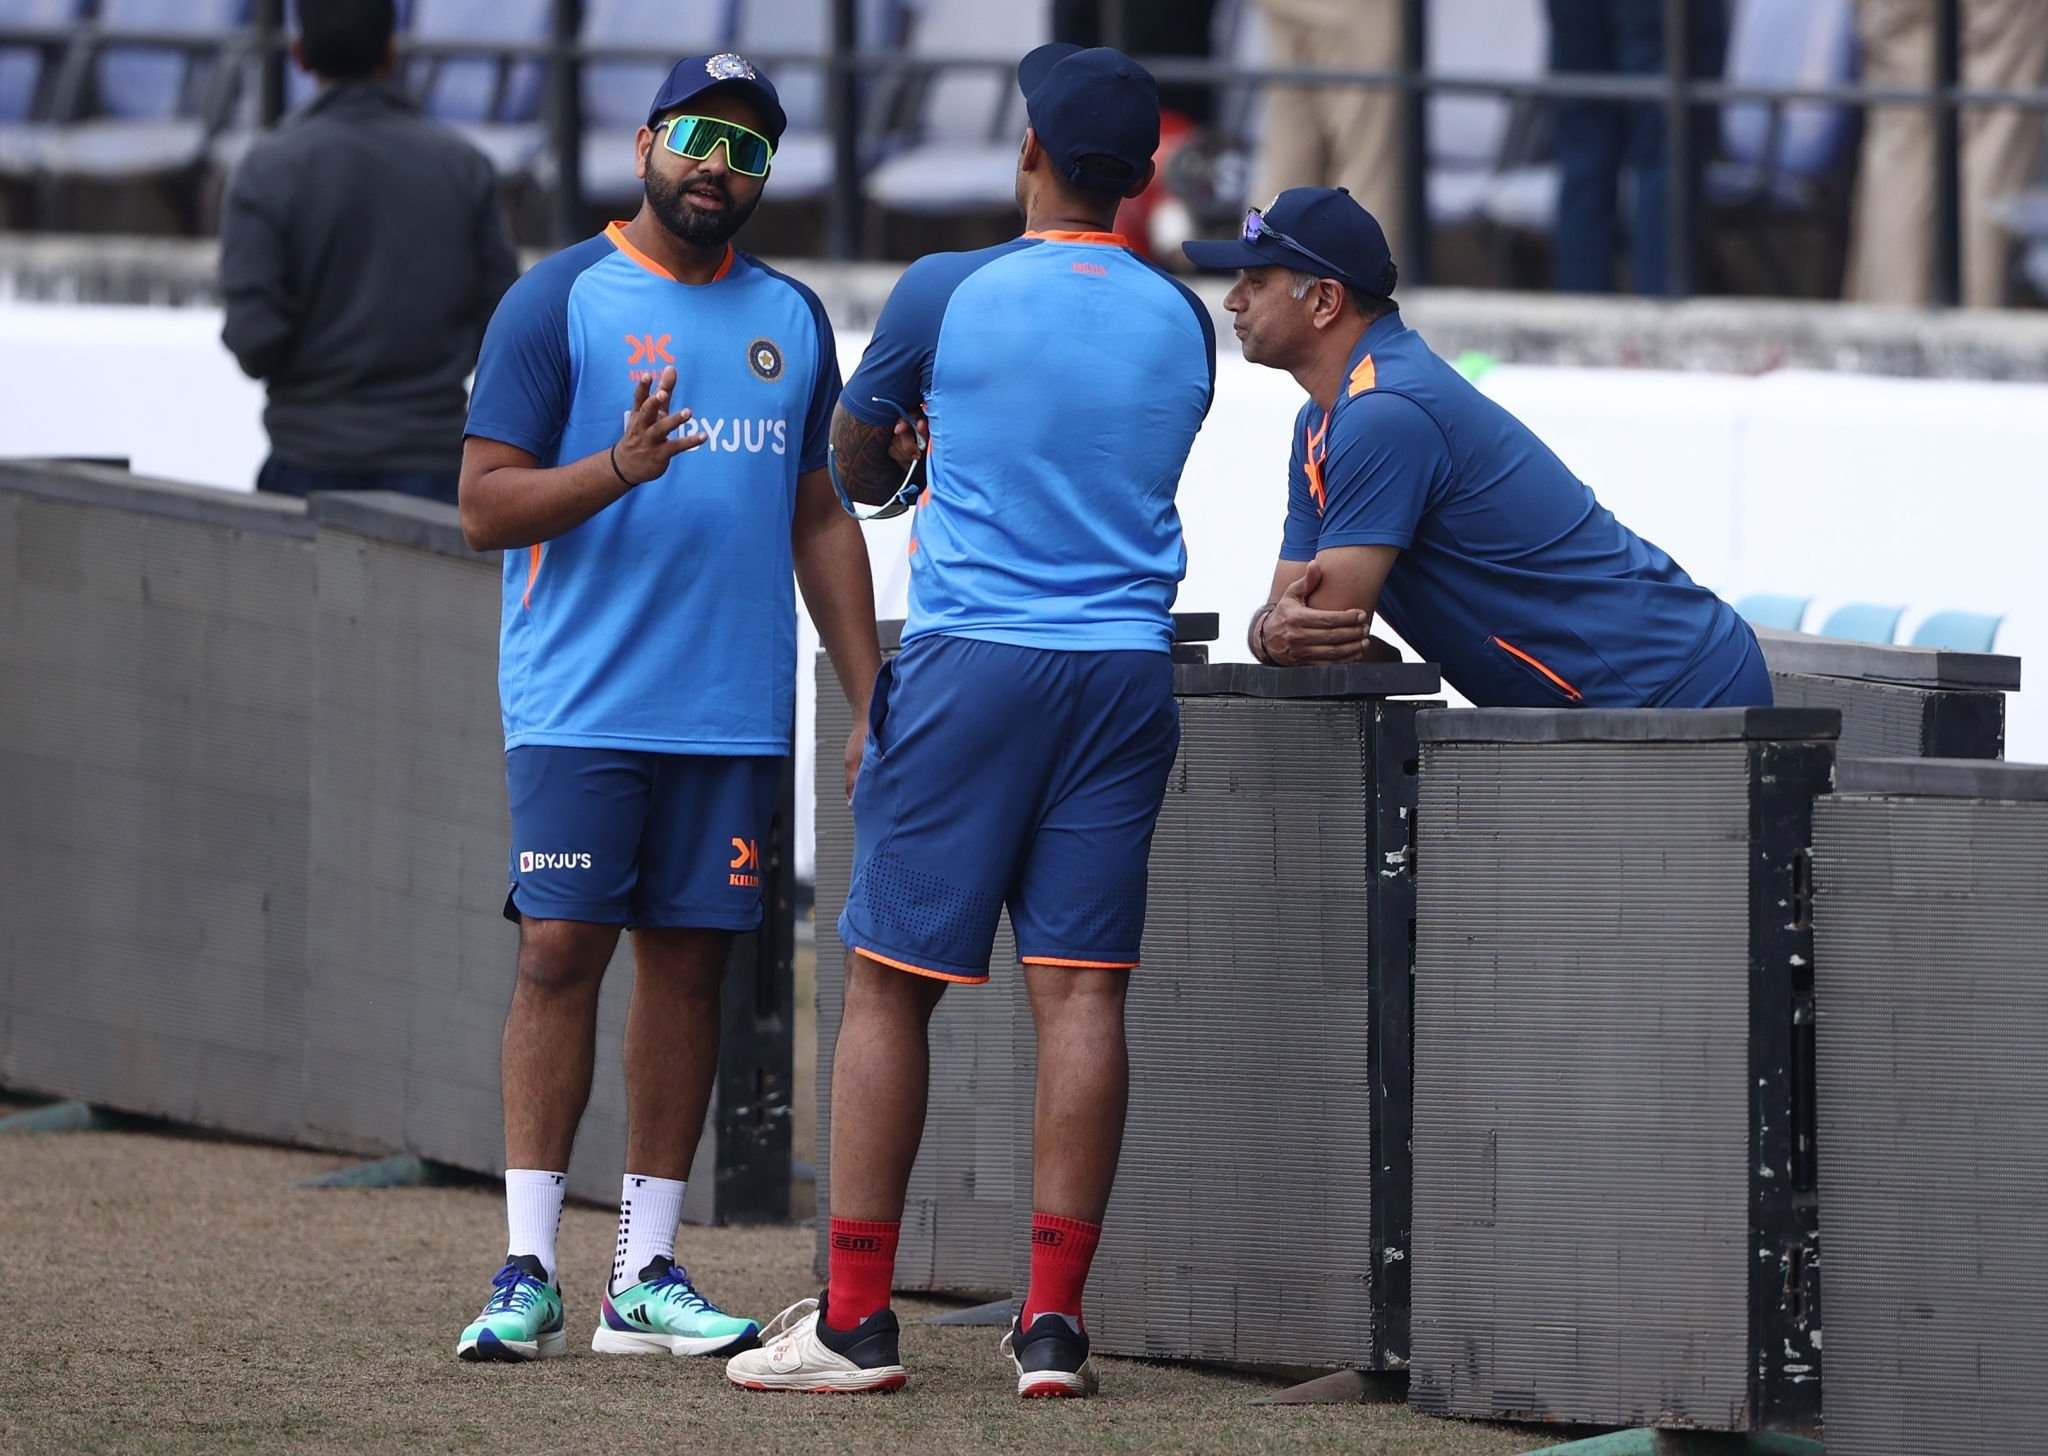 India Memainkan XI vs Australia: Seri dipertaruhkan, Rohit Sharma mempercayai XI yang sama meskipun Vizag merendahkan, Peluang TERAKHIR untuk Suryakumar Yadav - Ikuti IND vs AUS LIVE